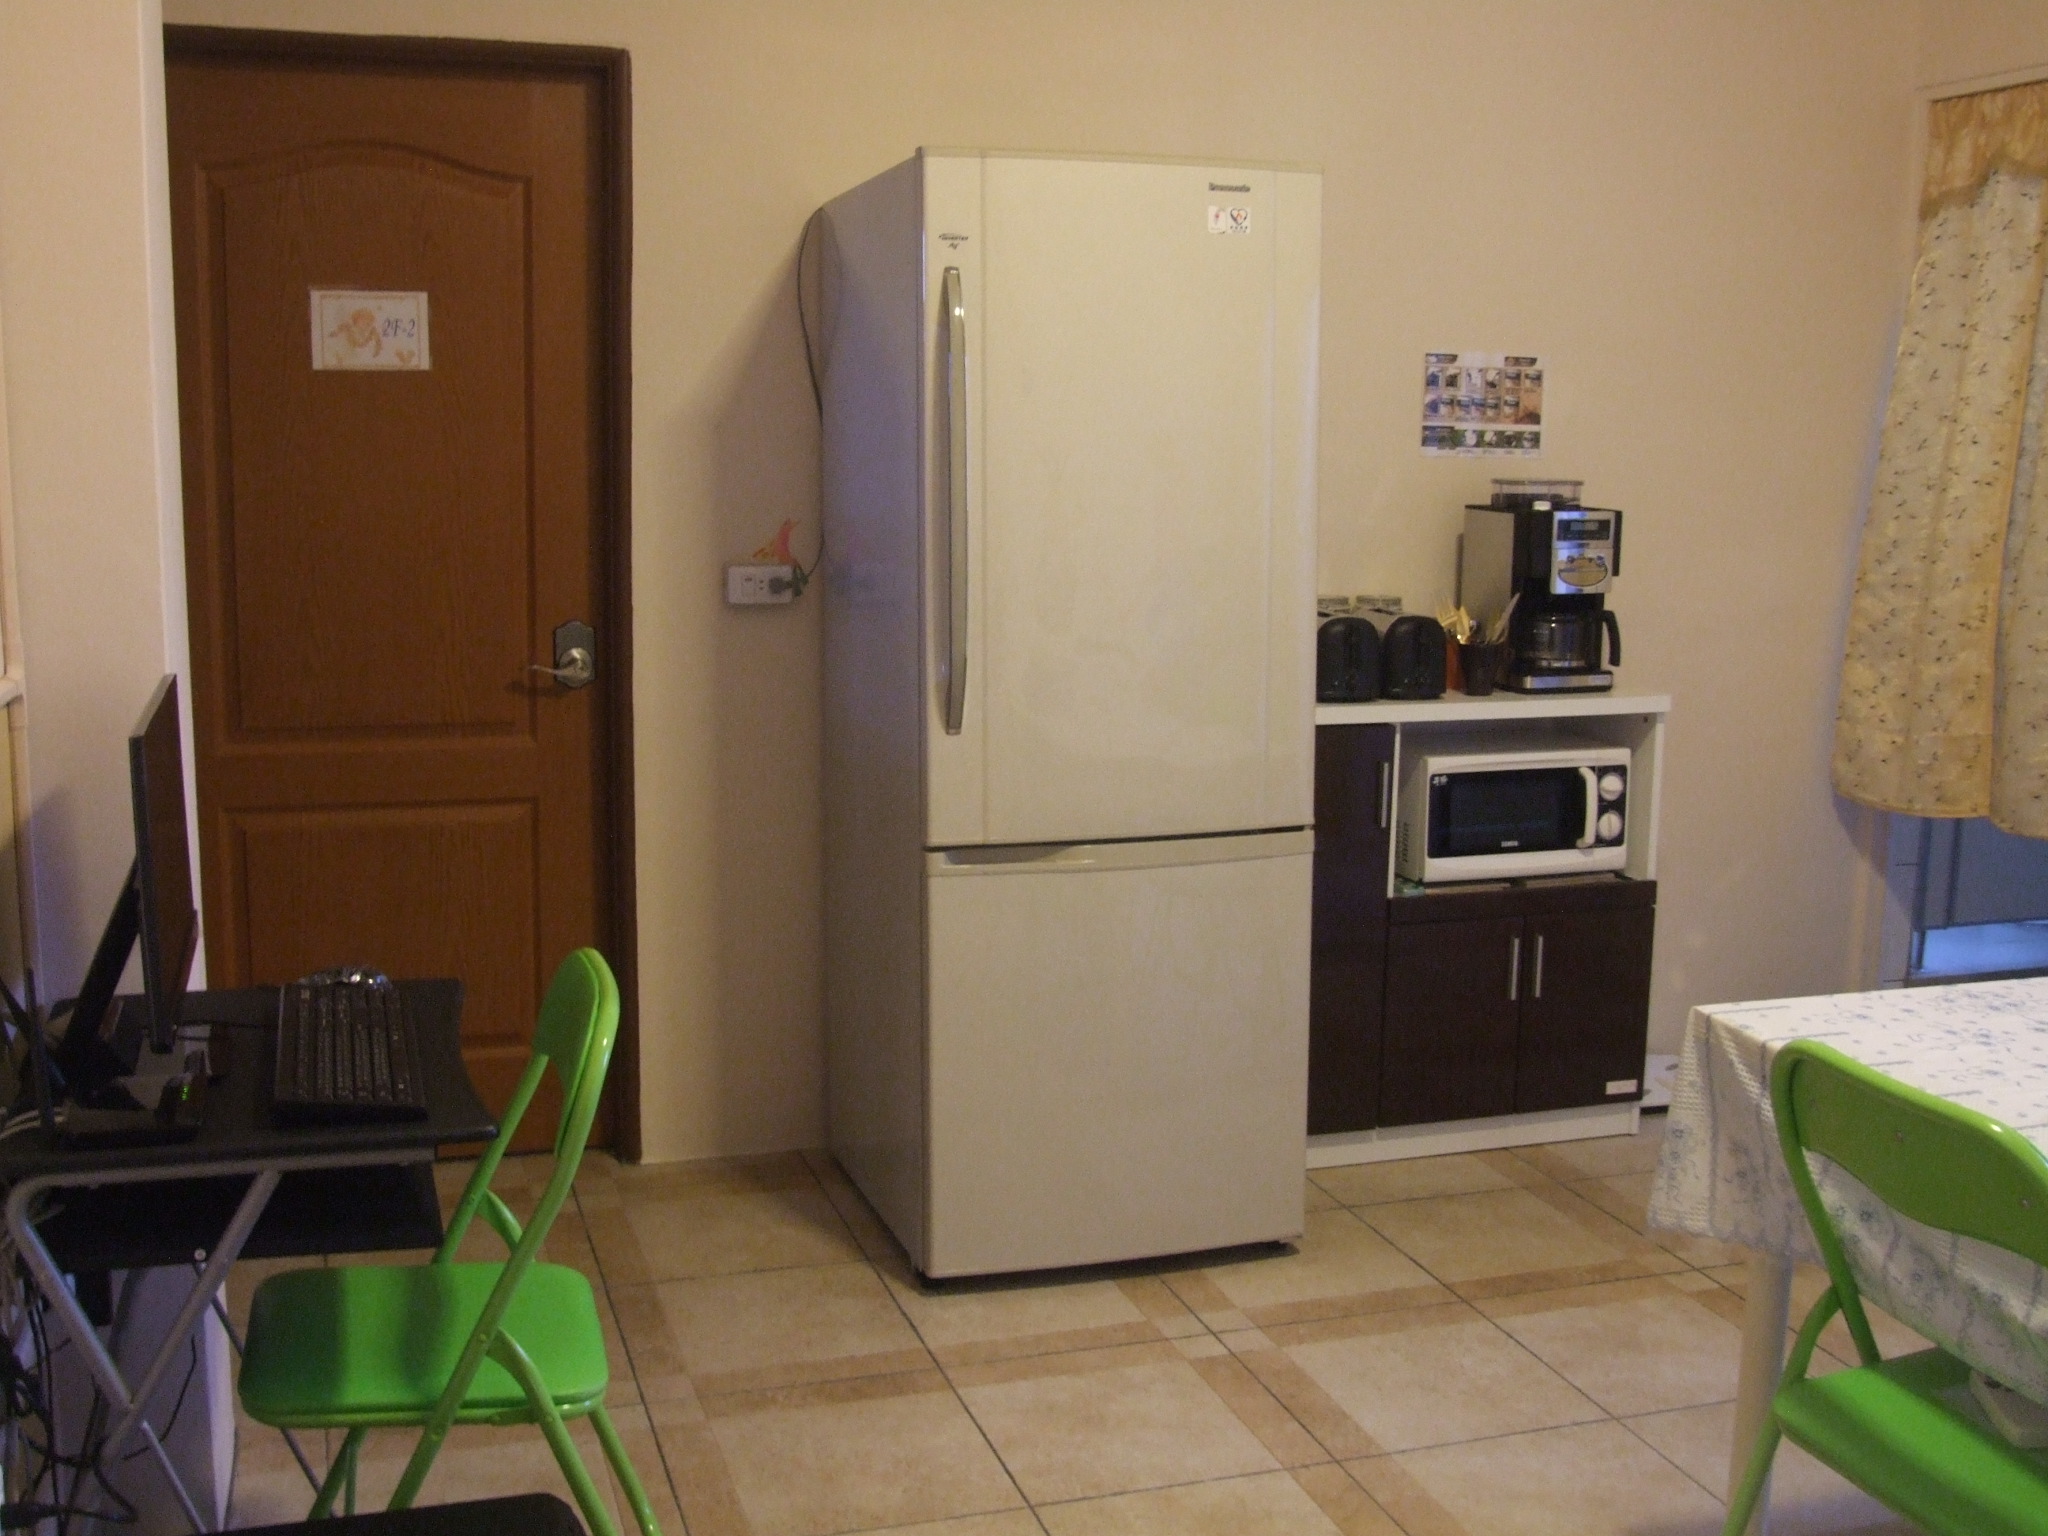 免費提供給住客使用的電腦、冰箱、微波爐、洗衣機……，讓您有在家的感覺。